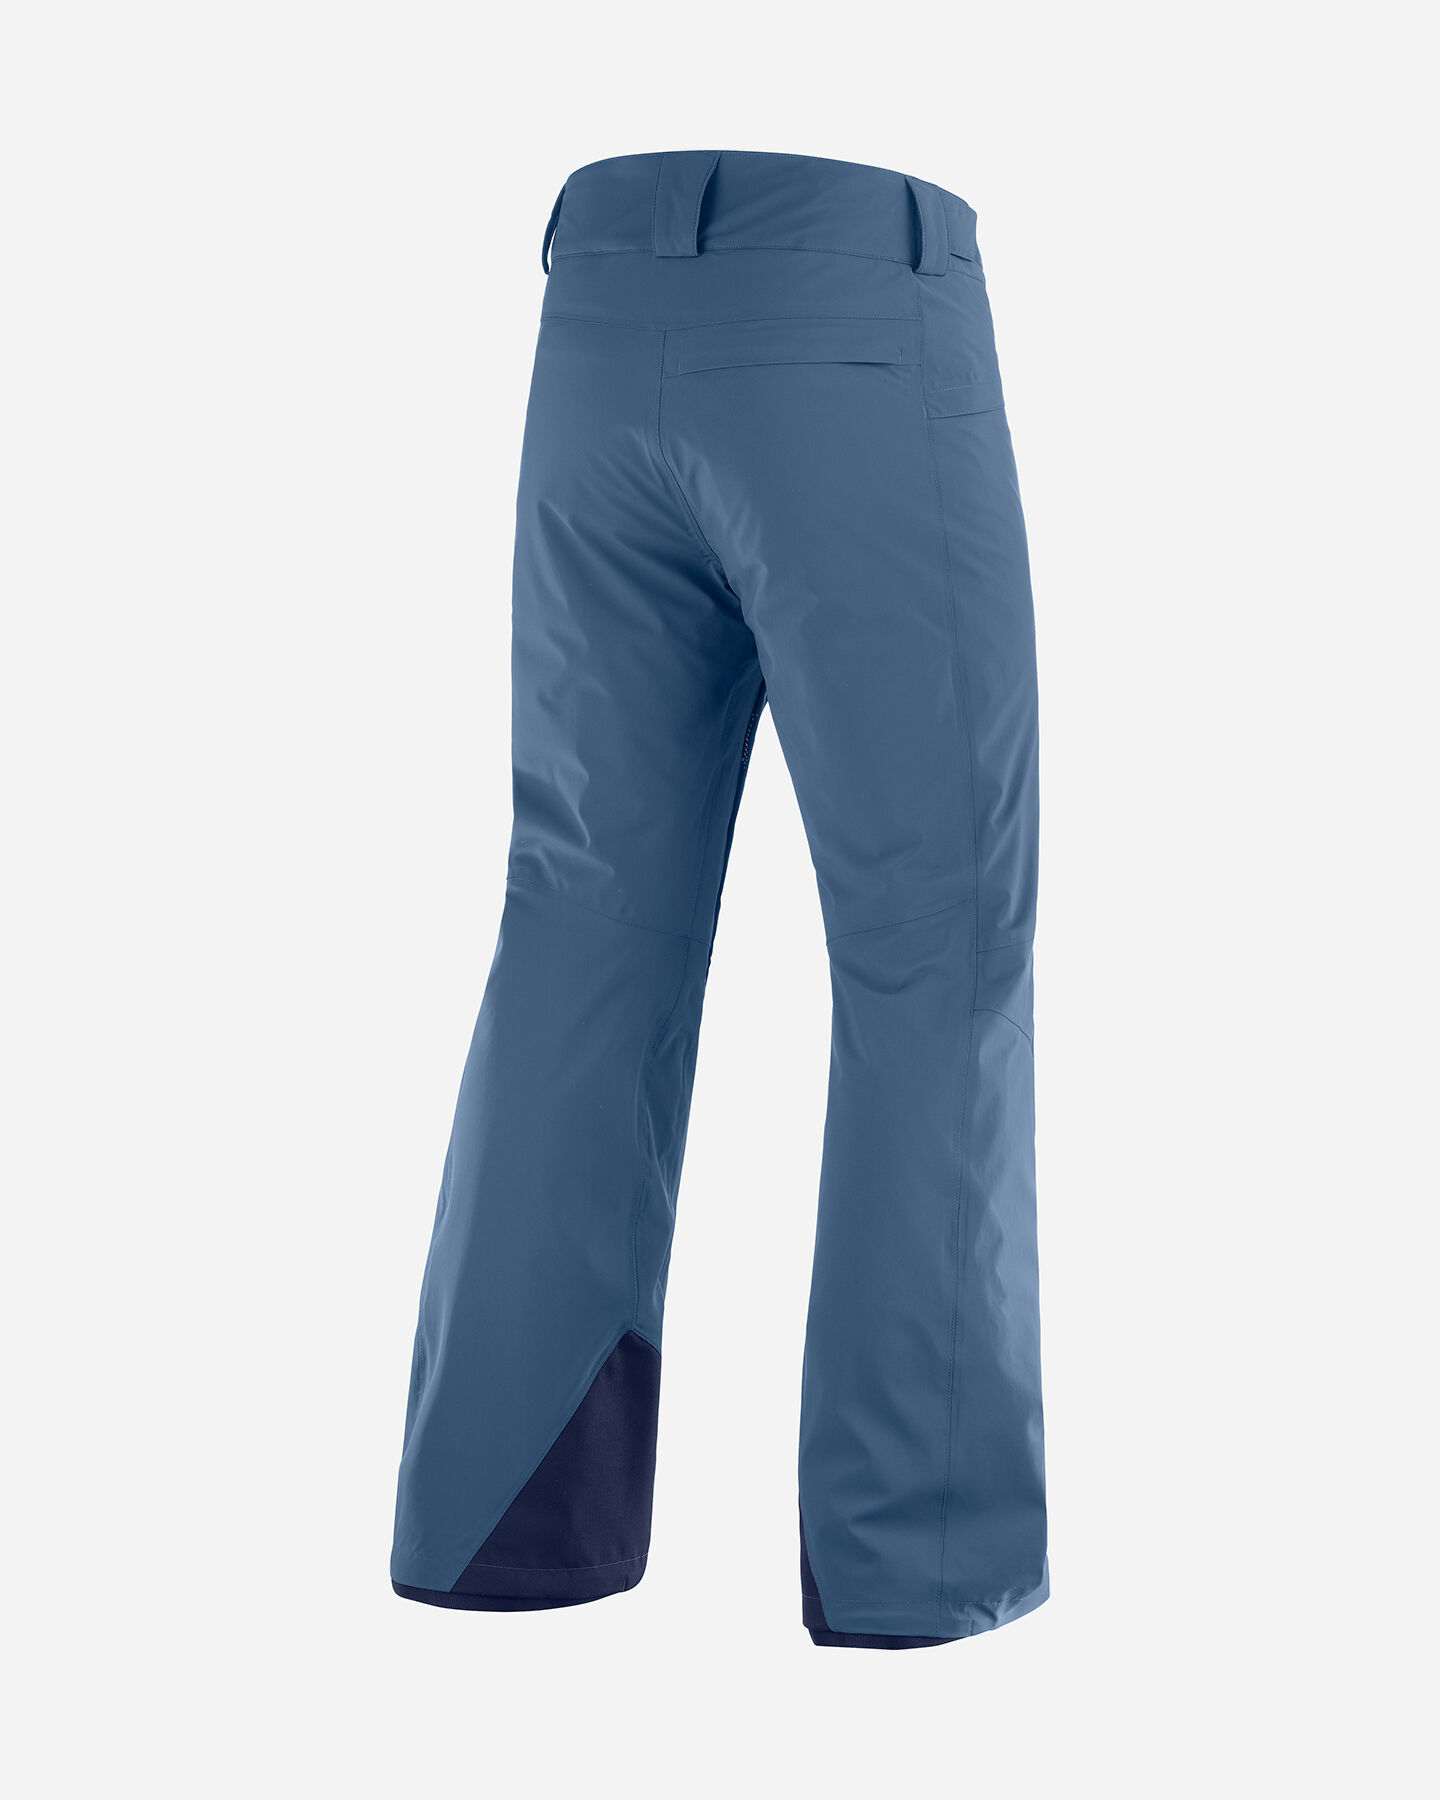  Pantalone sci SALOMON BRILLIANT M S5240243 scatto 1